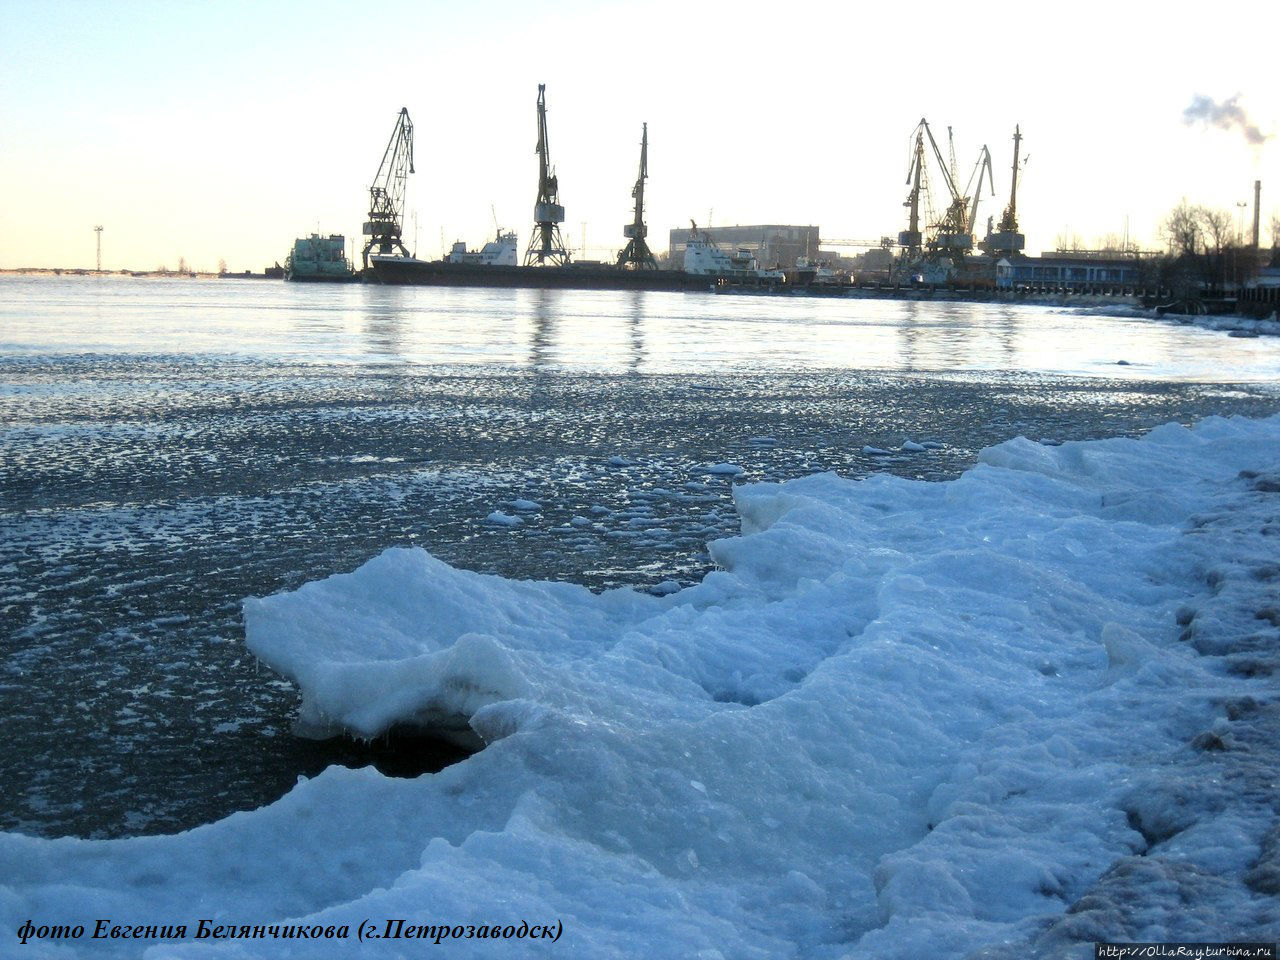 Вид на грузовой порт Петрозаводска со стороны Онежской набережной. Петрозаводск, Россия